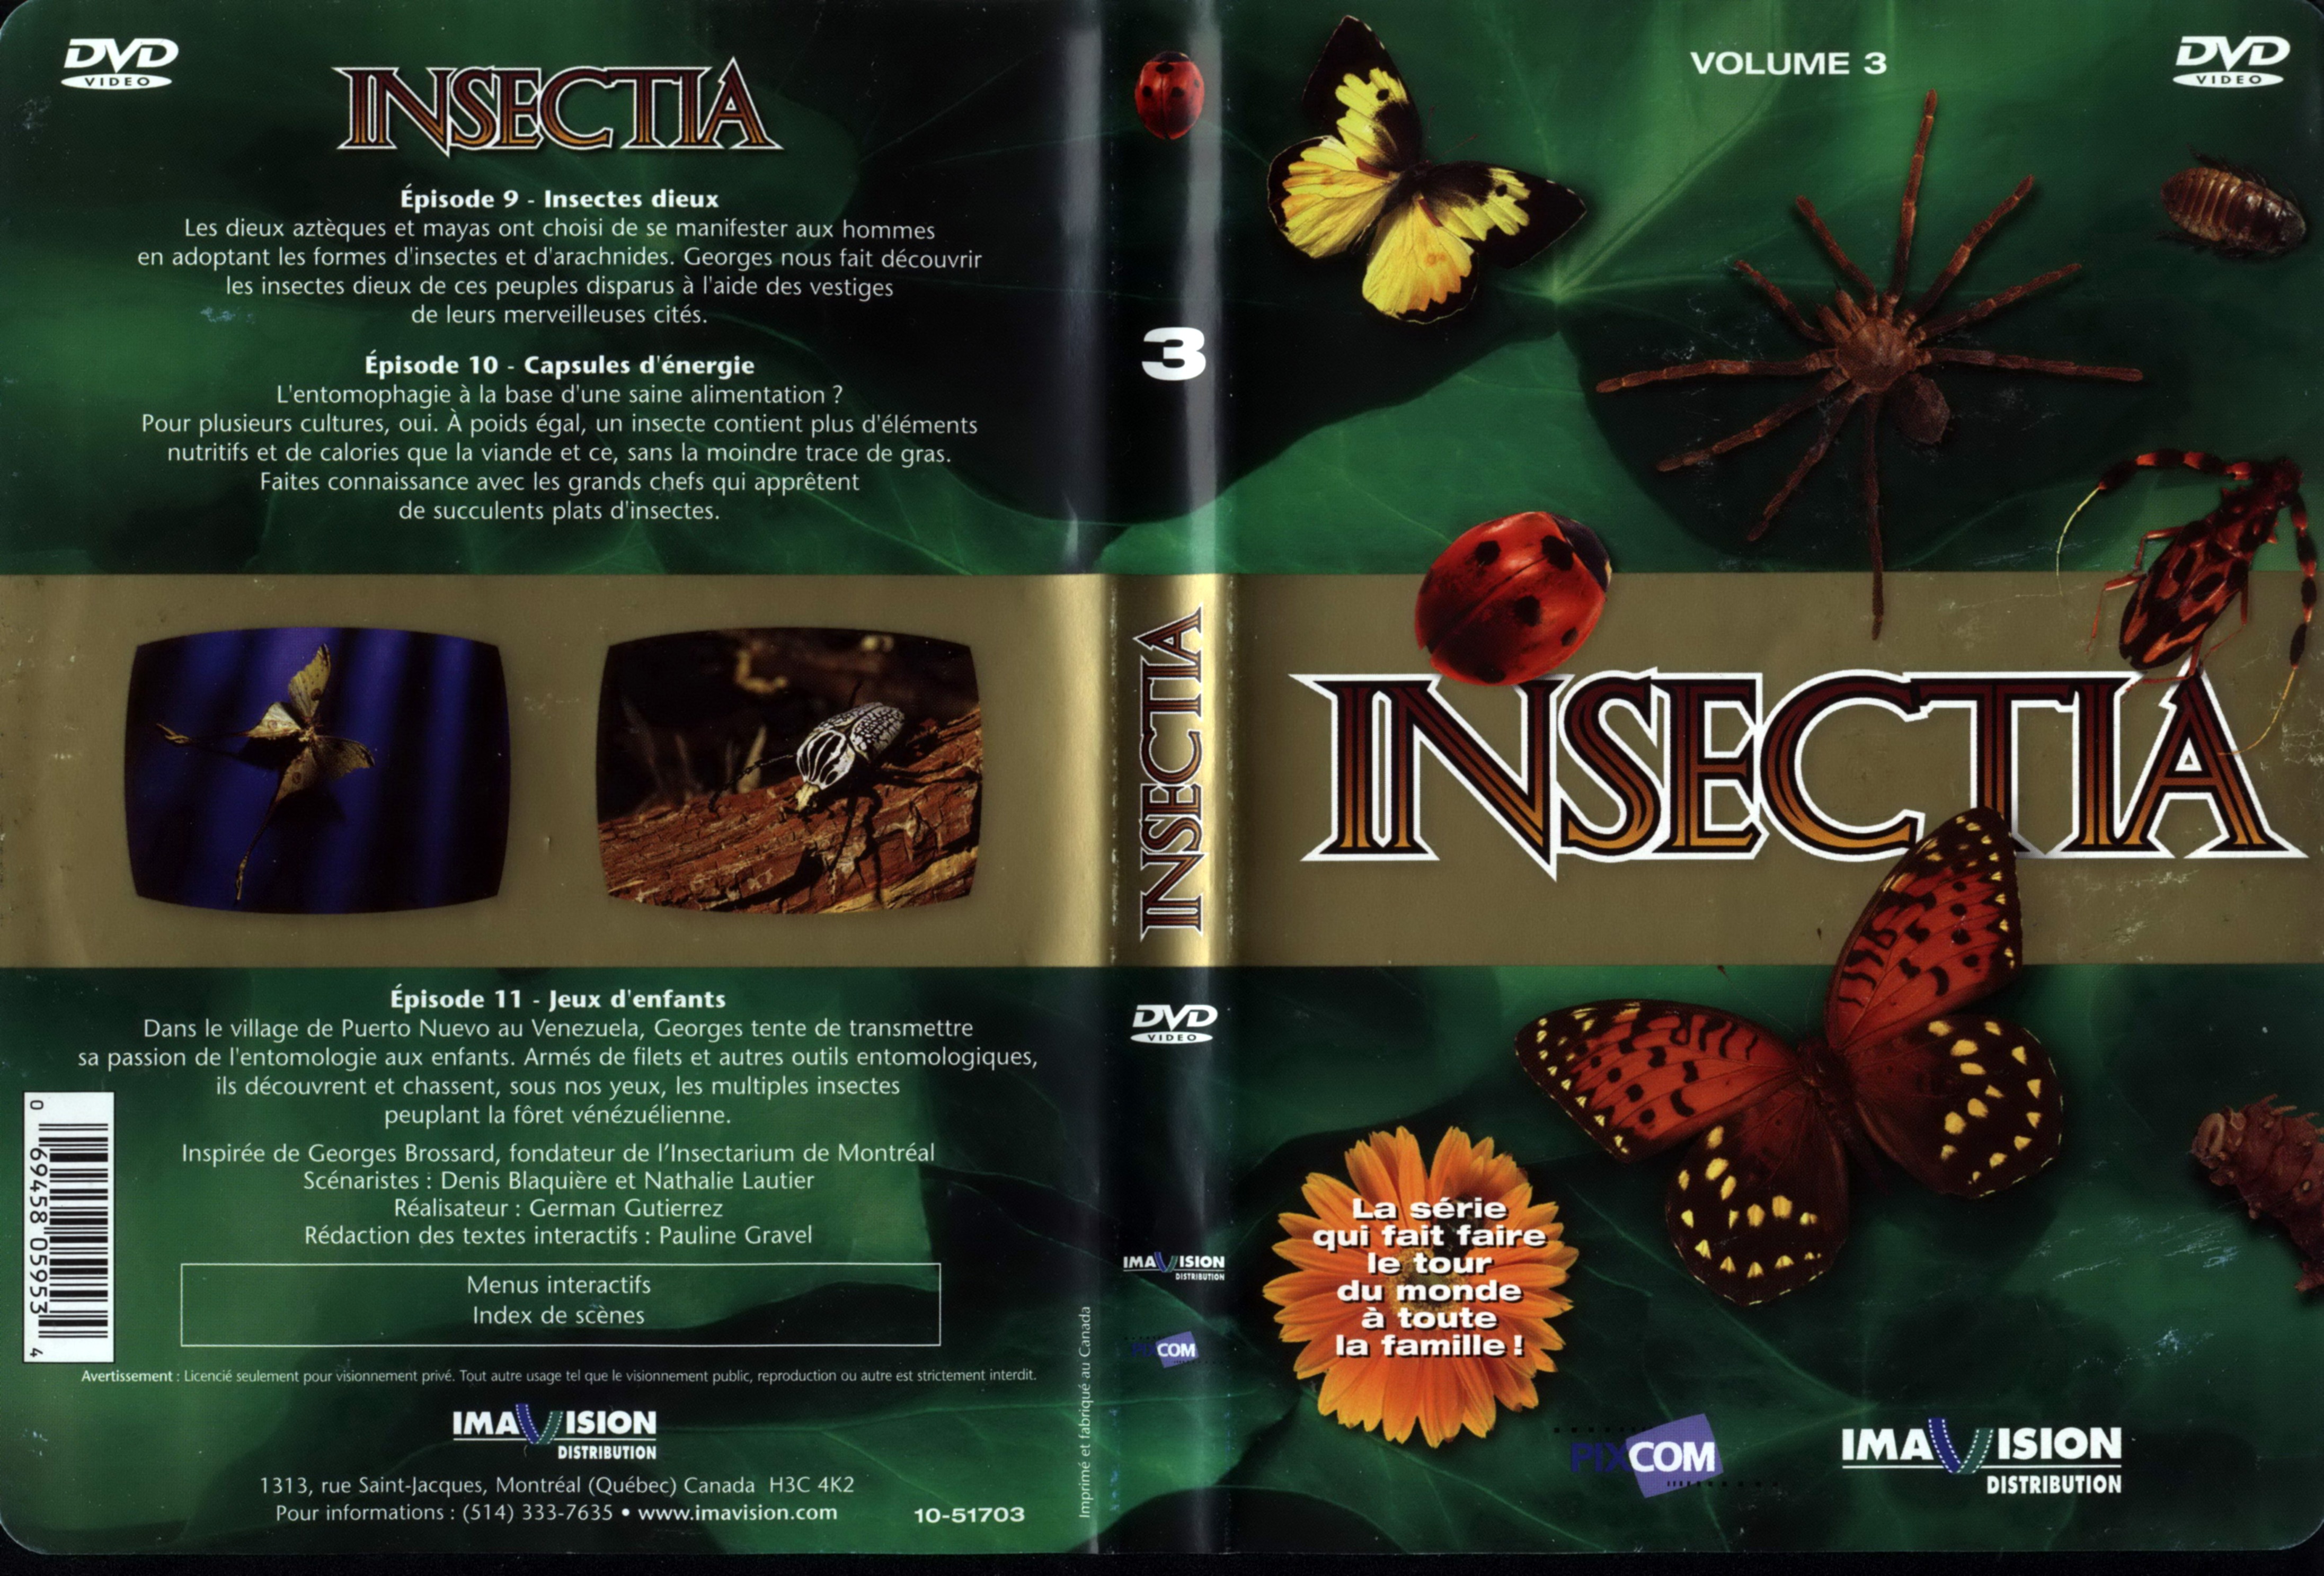 Jaquette DVD Insectia vol 3